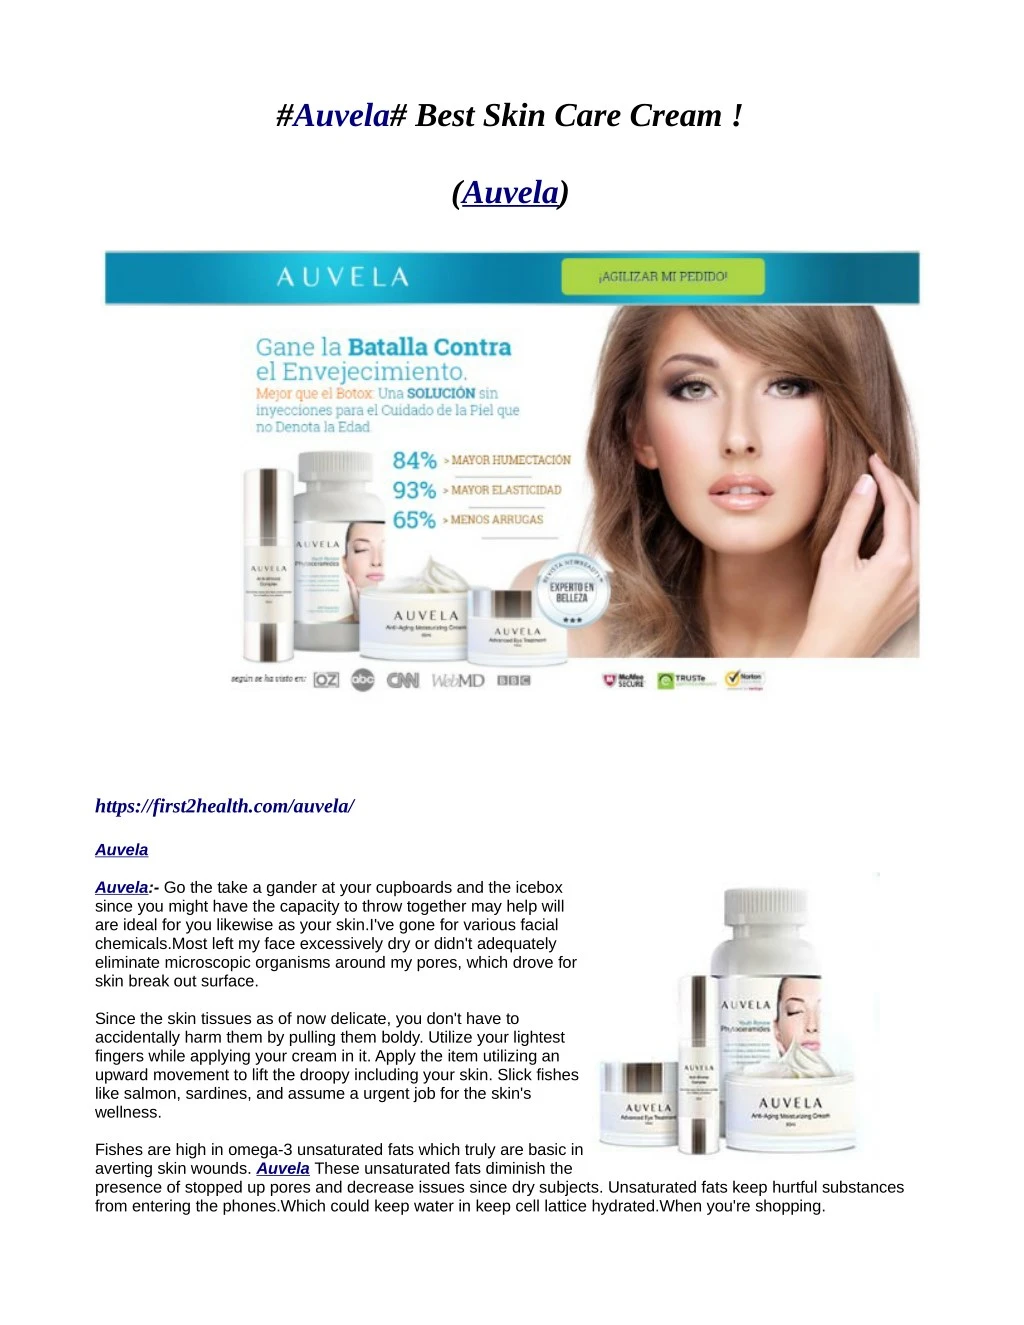 auvela best skin care cream